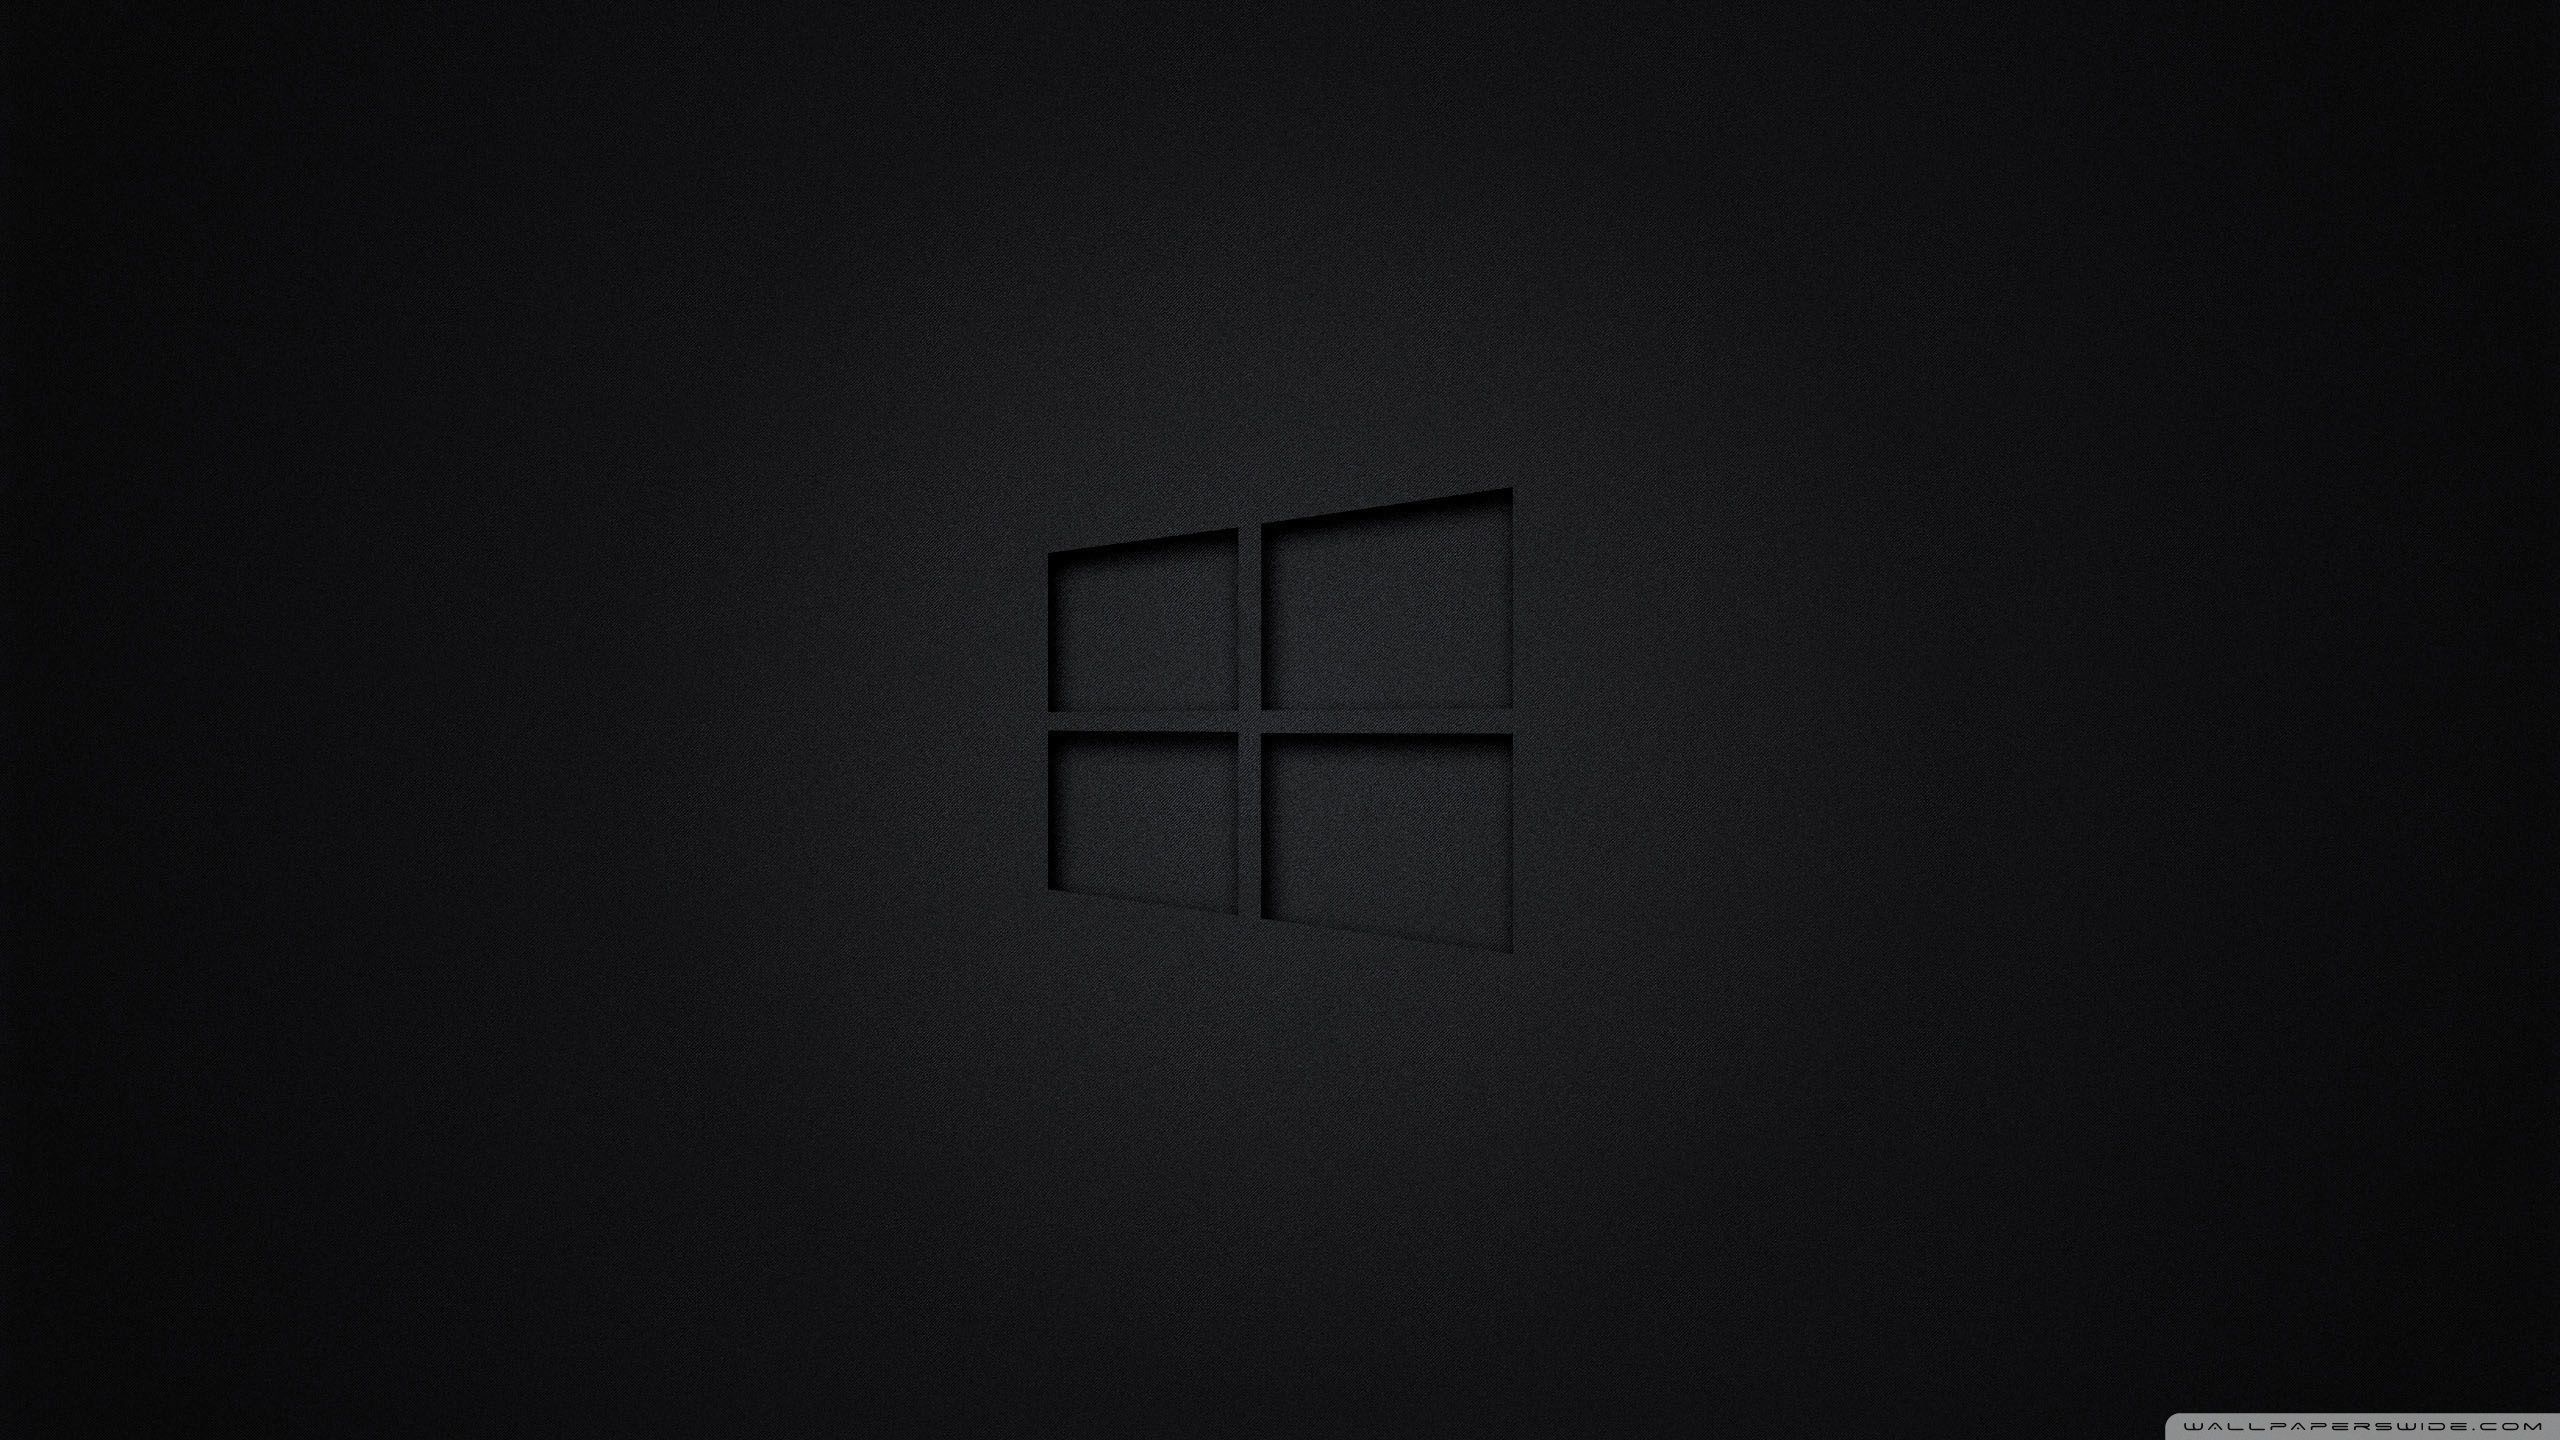 New Windows Wallpaper HD Black Full 1080p For Pc Desktop